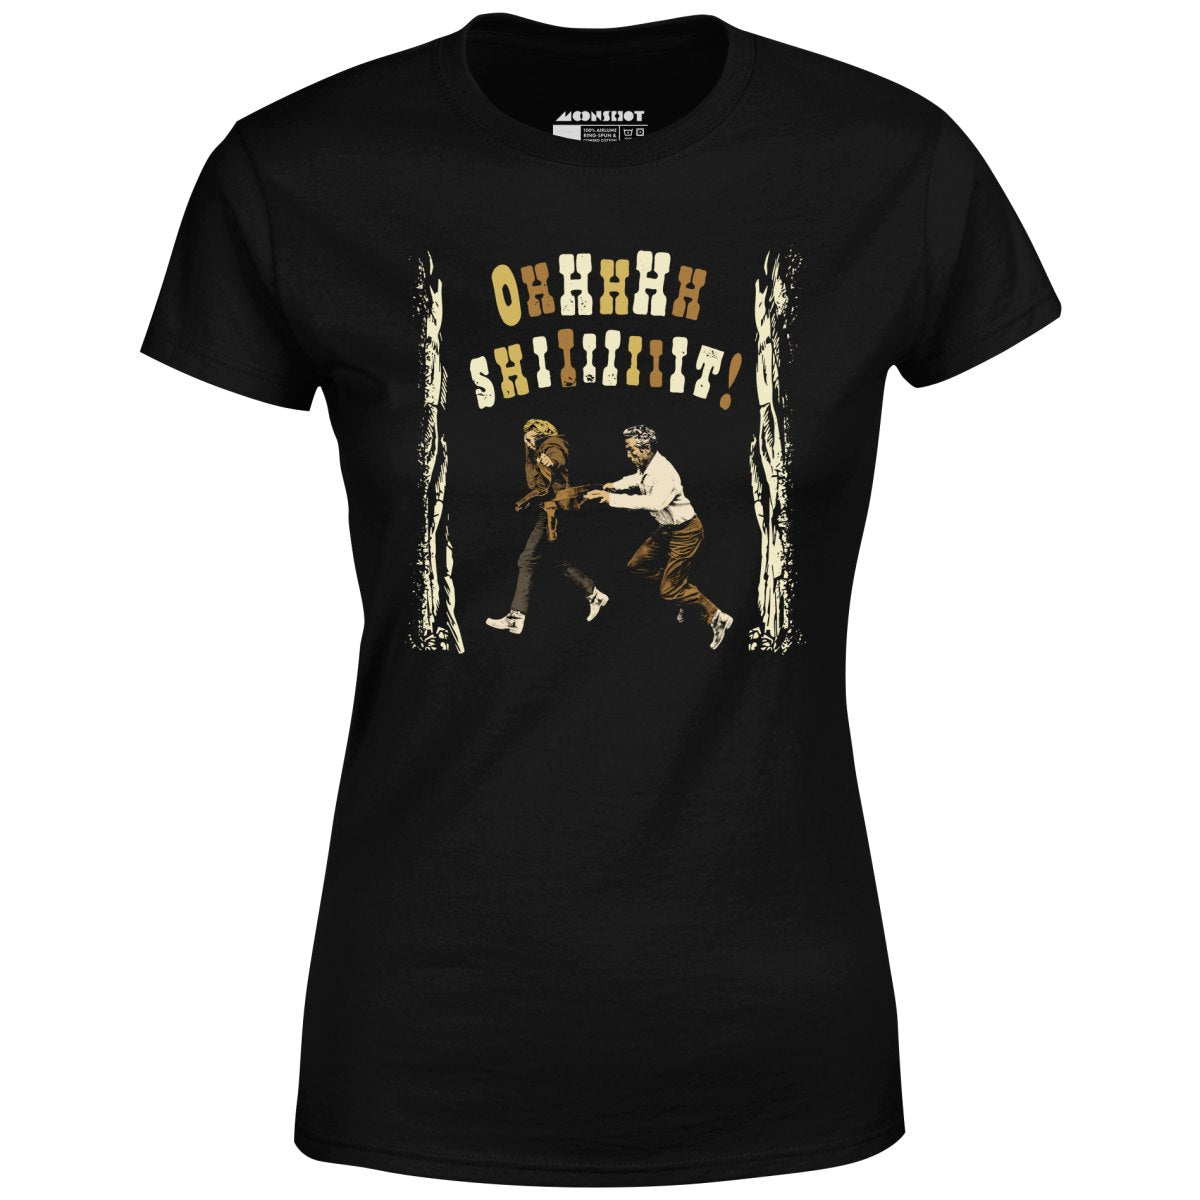 Ohhhhh Shiiiiiiit - Butch Cassidy & The Sundance Kid - Women's T-Shirt